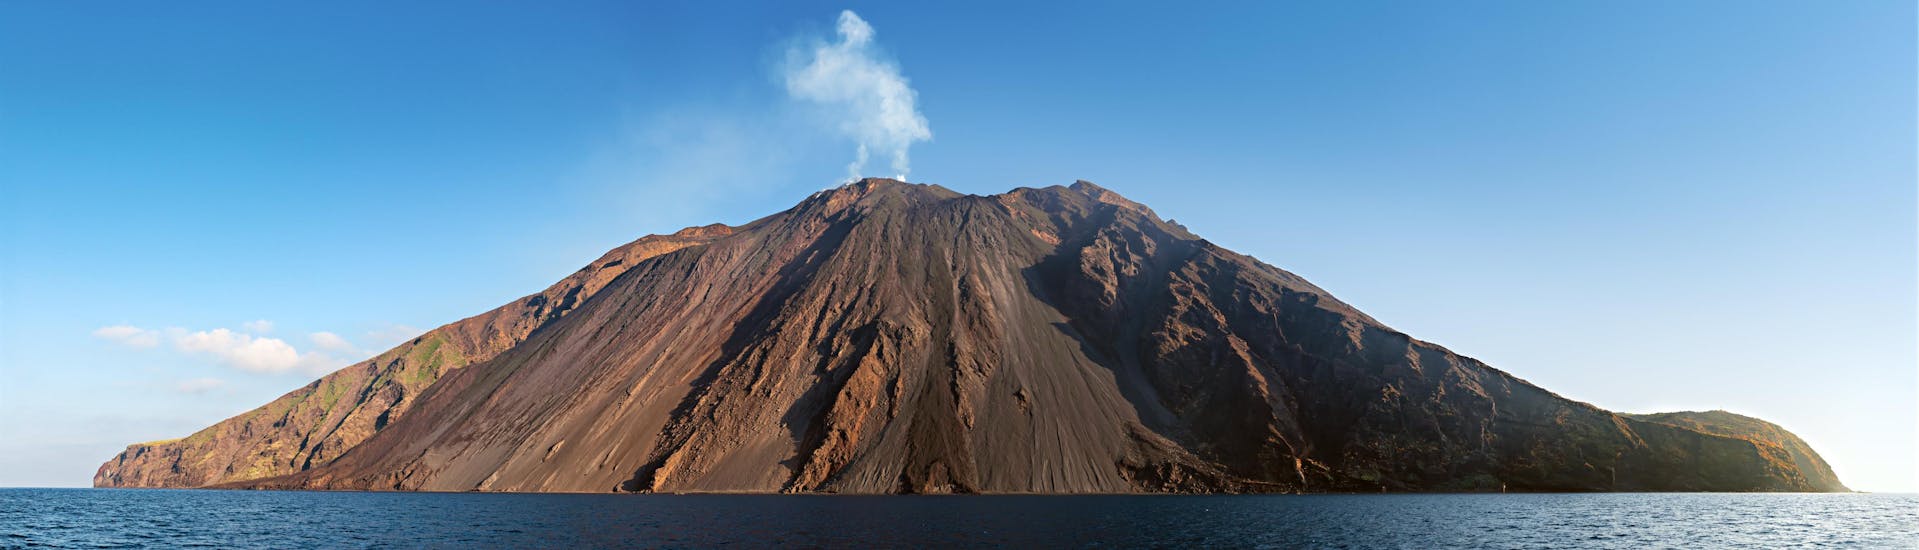 Bild des Vulkans Stromboli, einer beliebten touristischen Sehenswürdigkeit auf Sizilien.